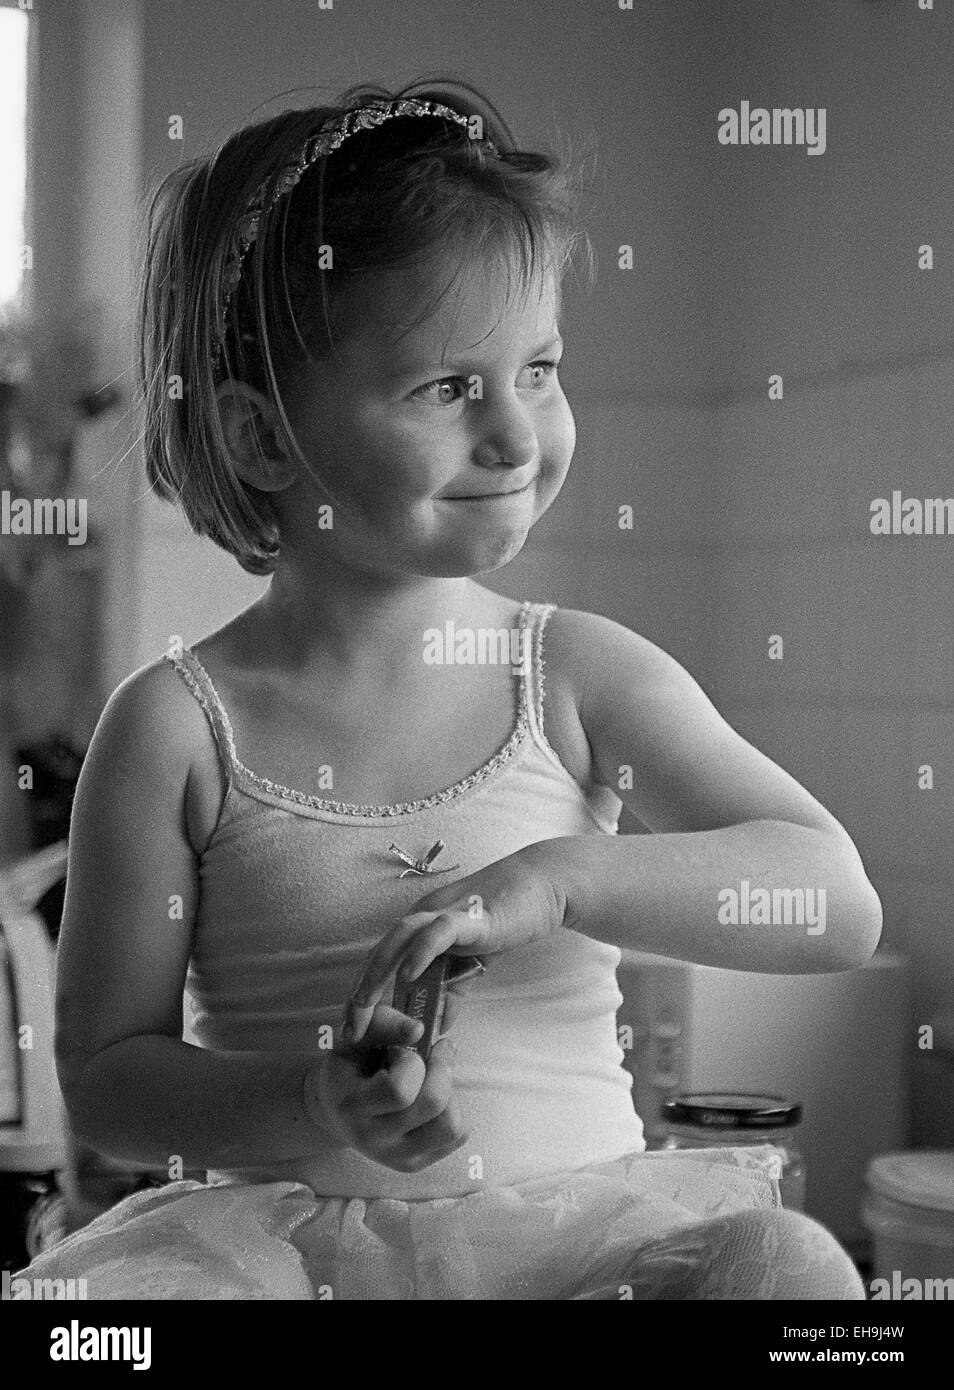 Imagen en blanco y negro de muy linda niña vestidos de tutu con encaje  guarnecido y arco pequeño en el centro. Asentada en la encimera de la  cocina, mirando hacia un lado